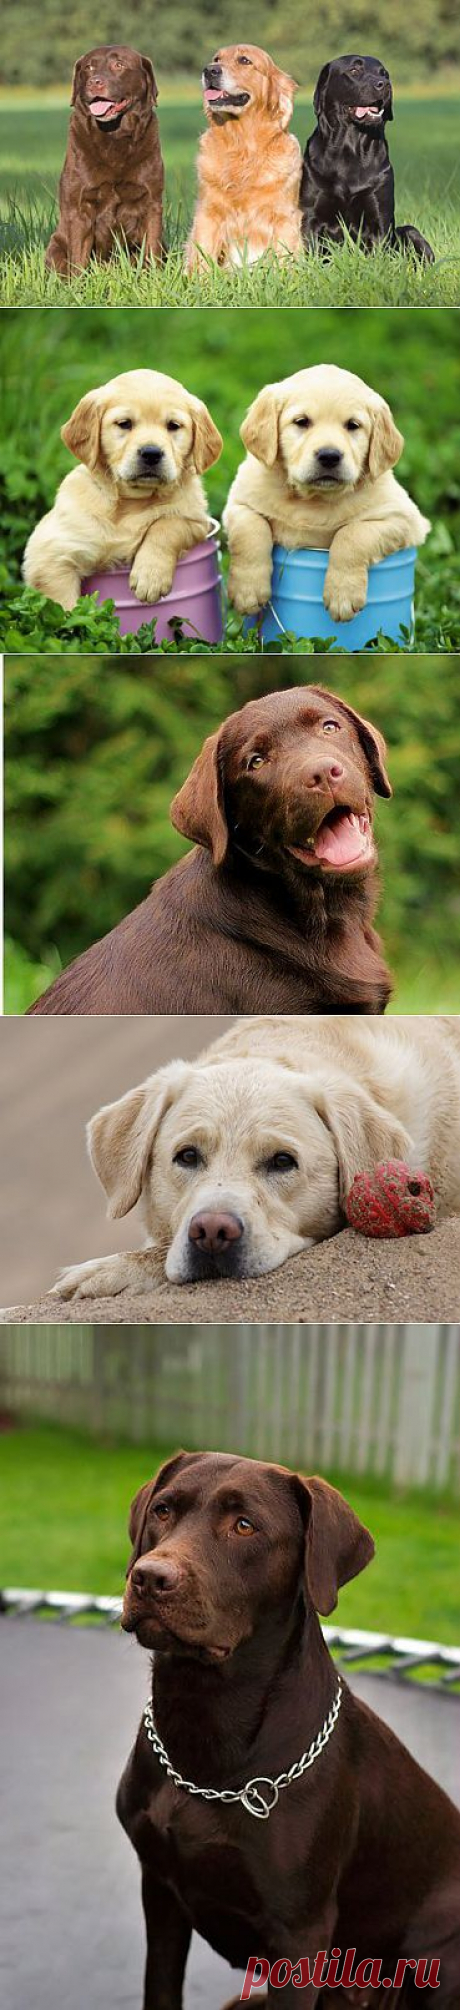 Лабрадор ретривер - описание породы, фото, правильный уход, выбор клички для собаки | Animal.ru